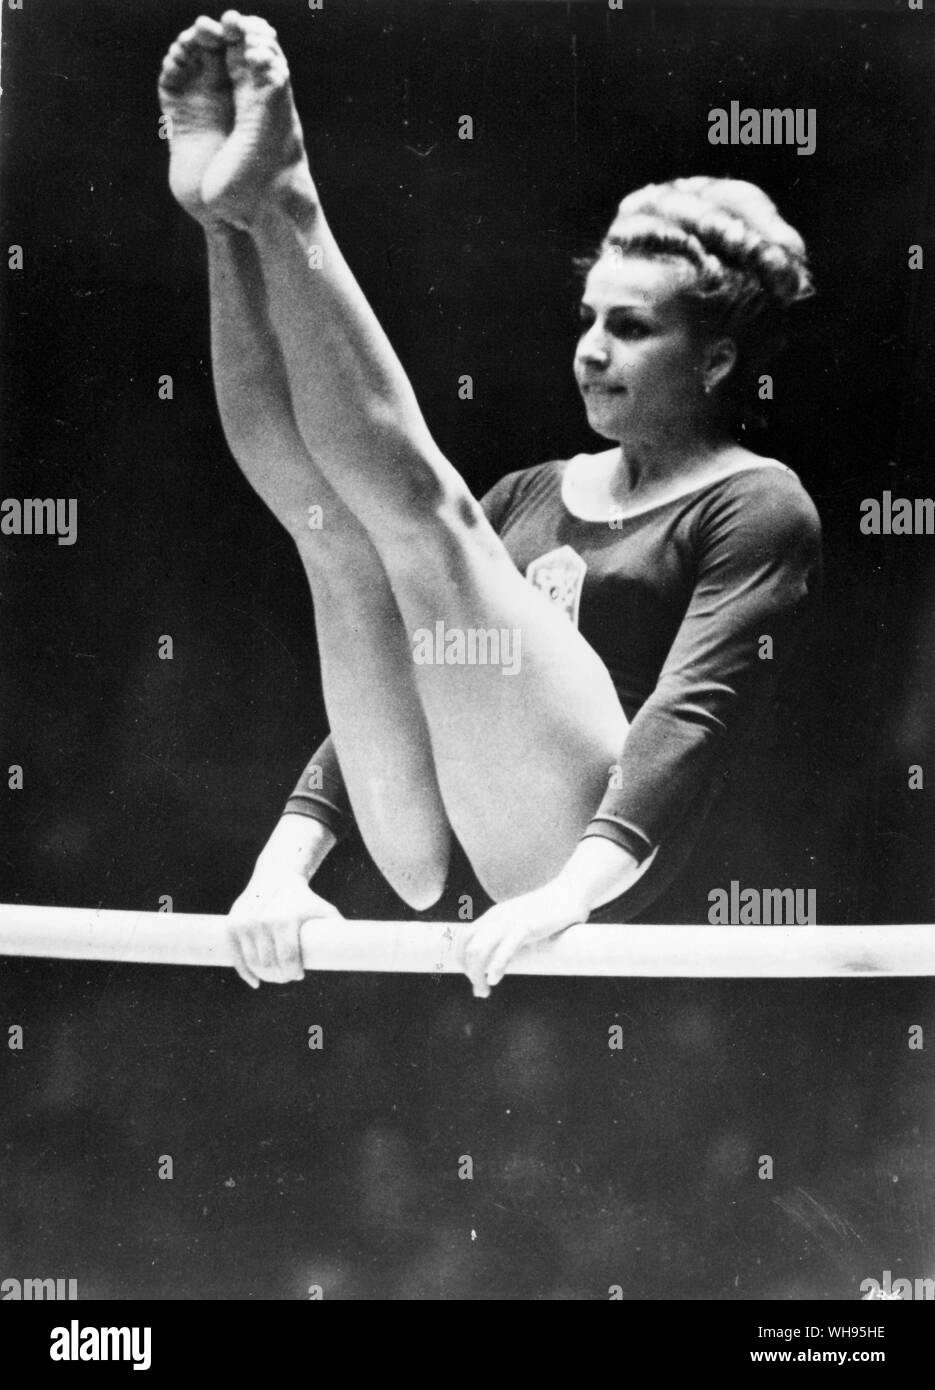 Japon, Tokyo, Jeux Olympiques 1964 : Vera Caslavska (Tchécoslovaquie). Le champion olympique de gymnastique pour les femmes. Banque D'Images